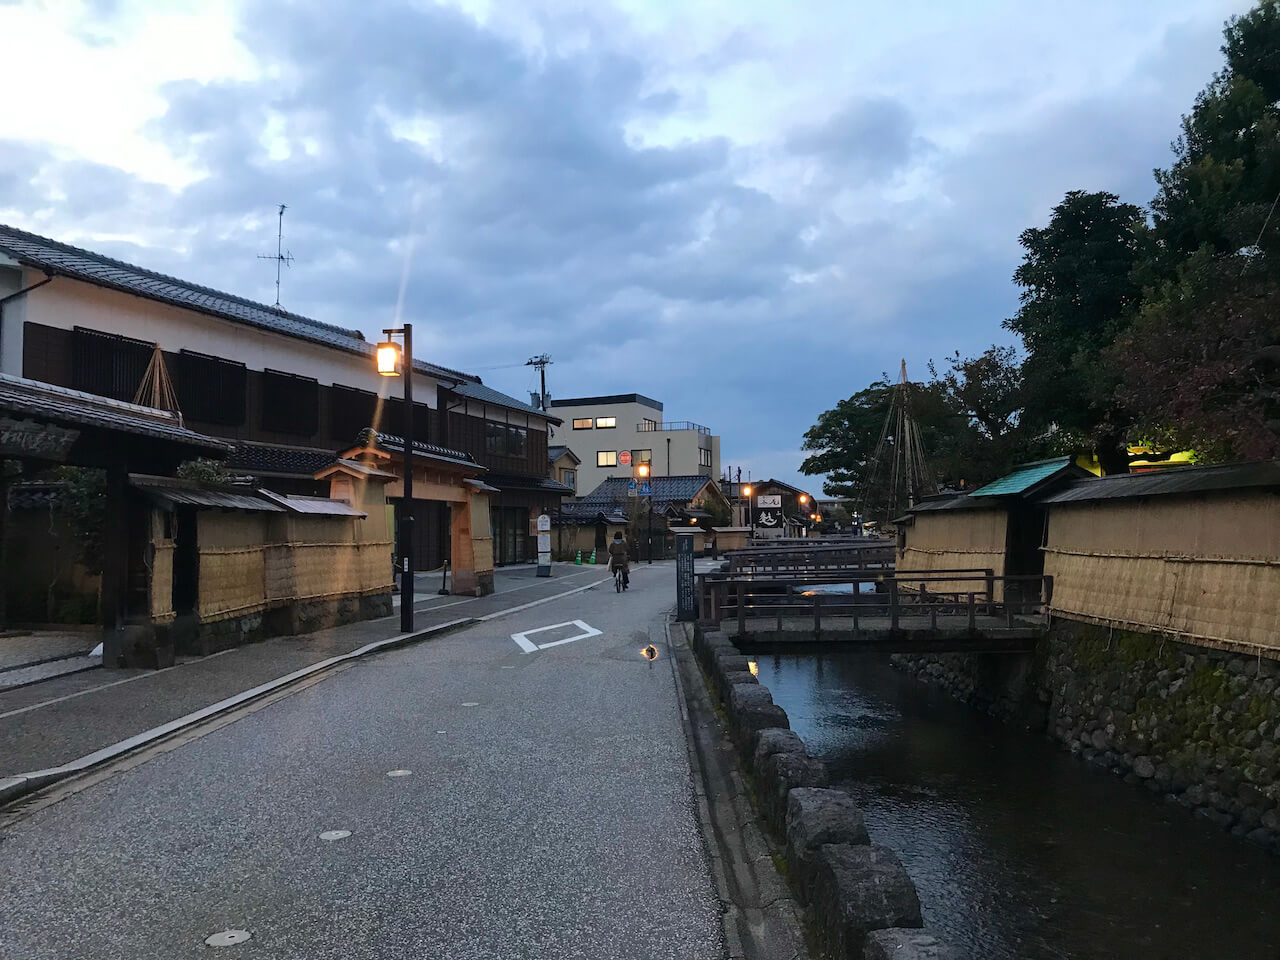 Townscape in Kanazawa, Ishikawa